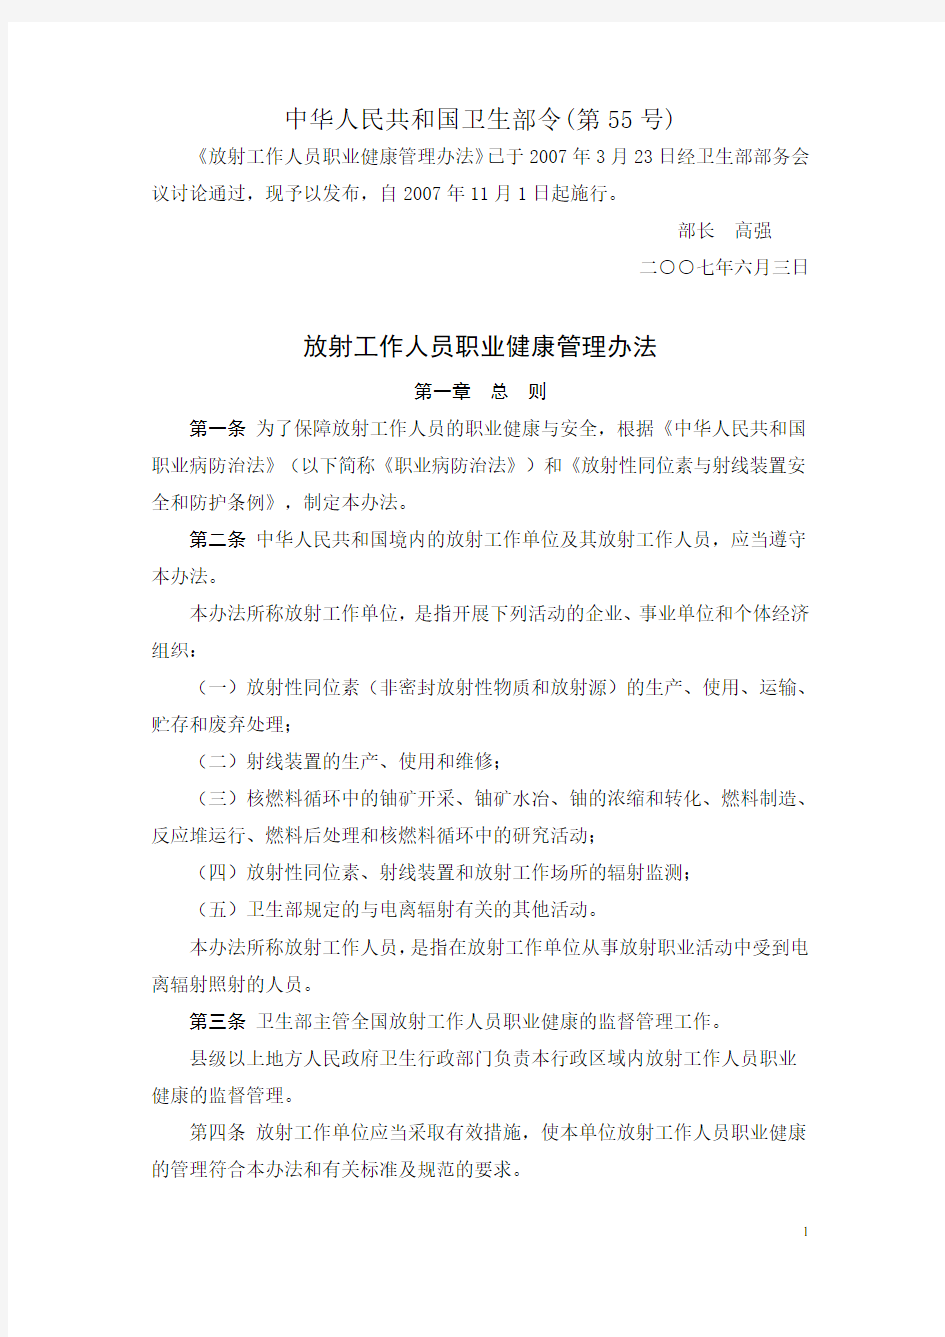 放射工作人员职业健康管理办法 中华人民共和国卫生部令(第55号)